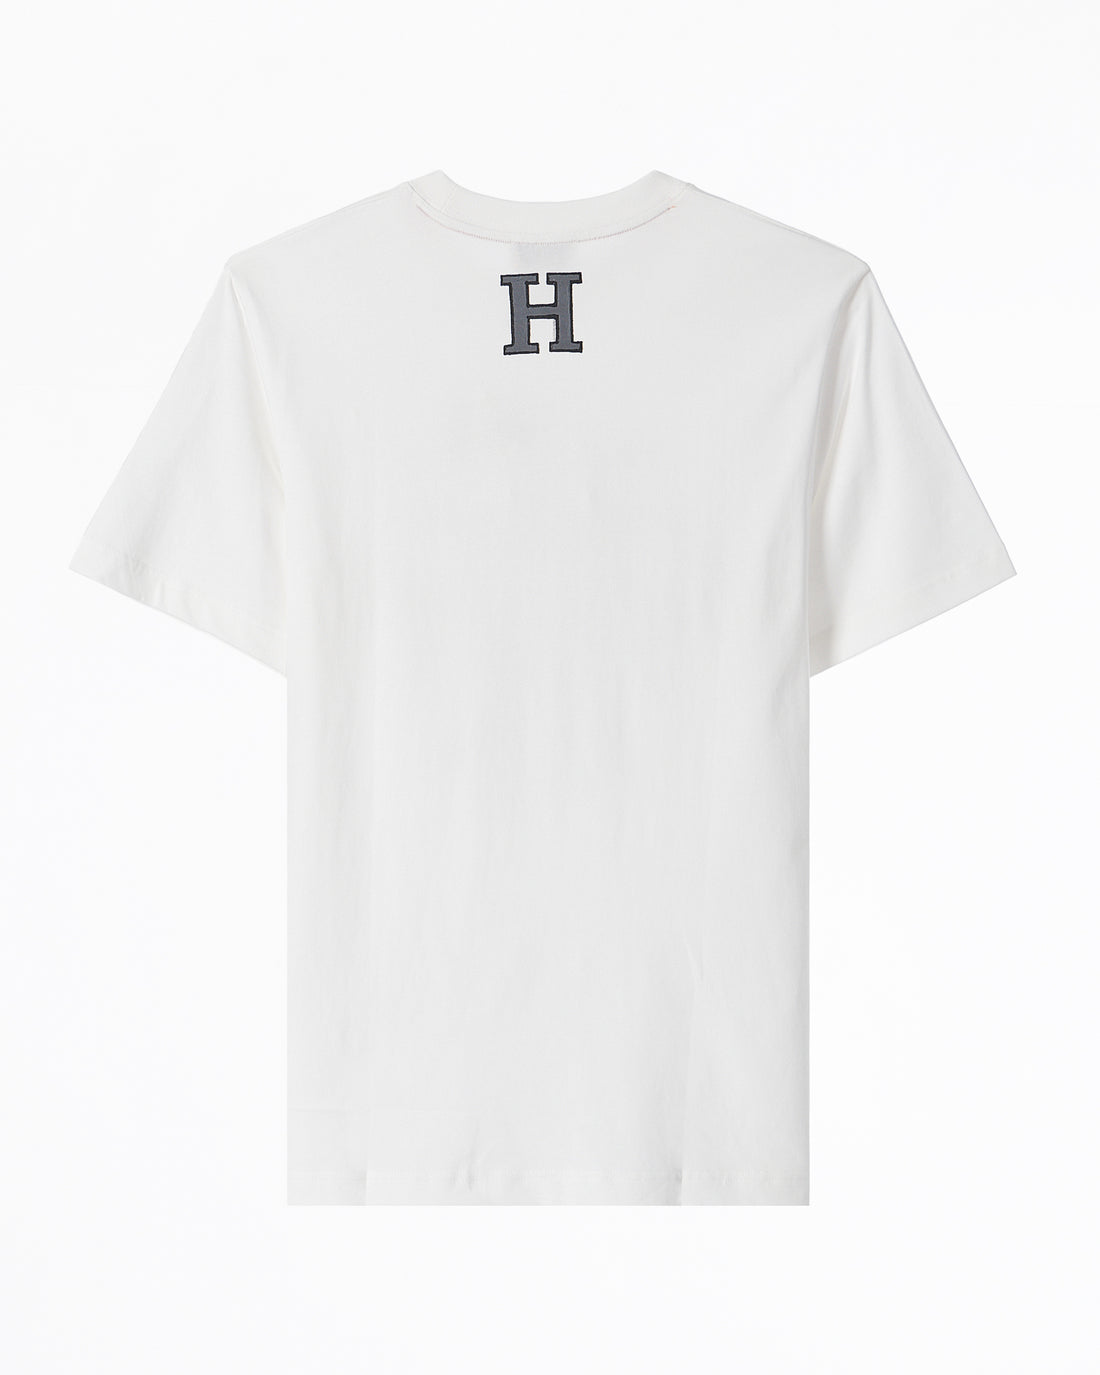 HER Logo Printed Men White T-Shirt 65.90